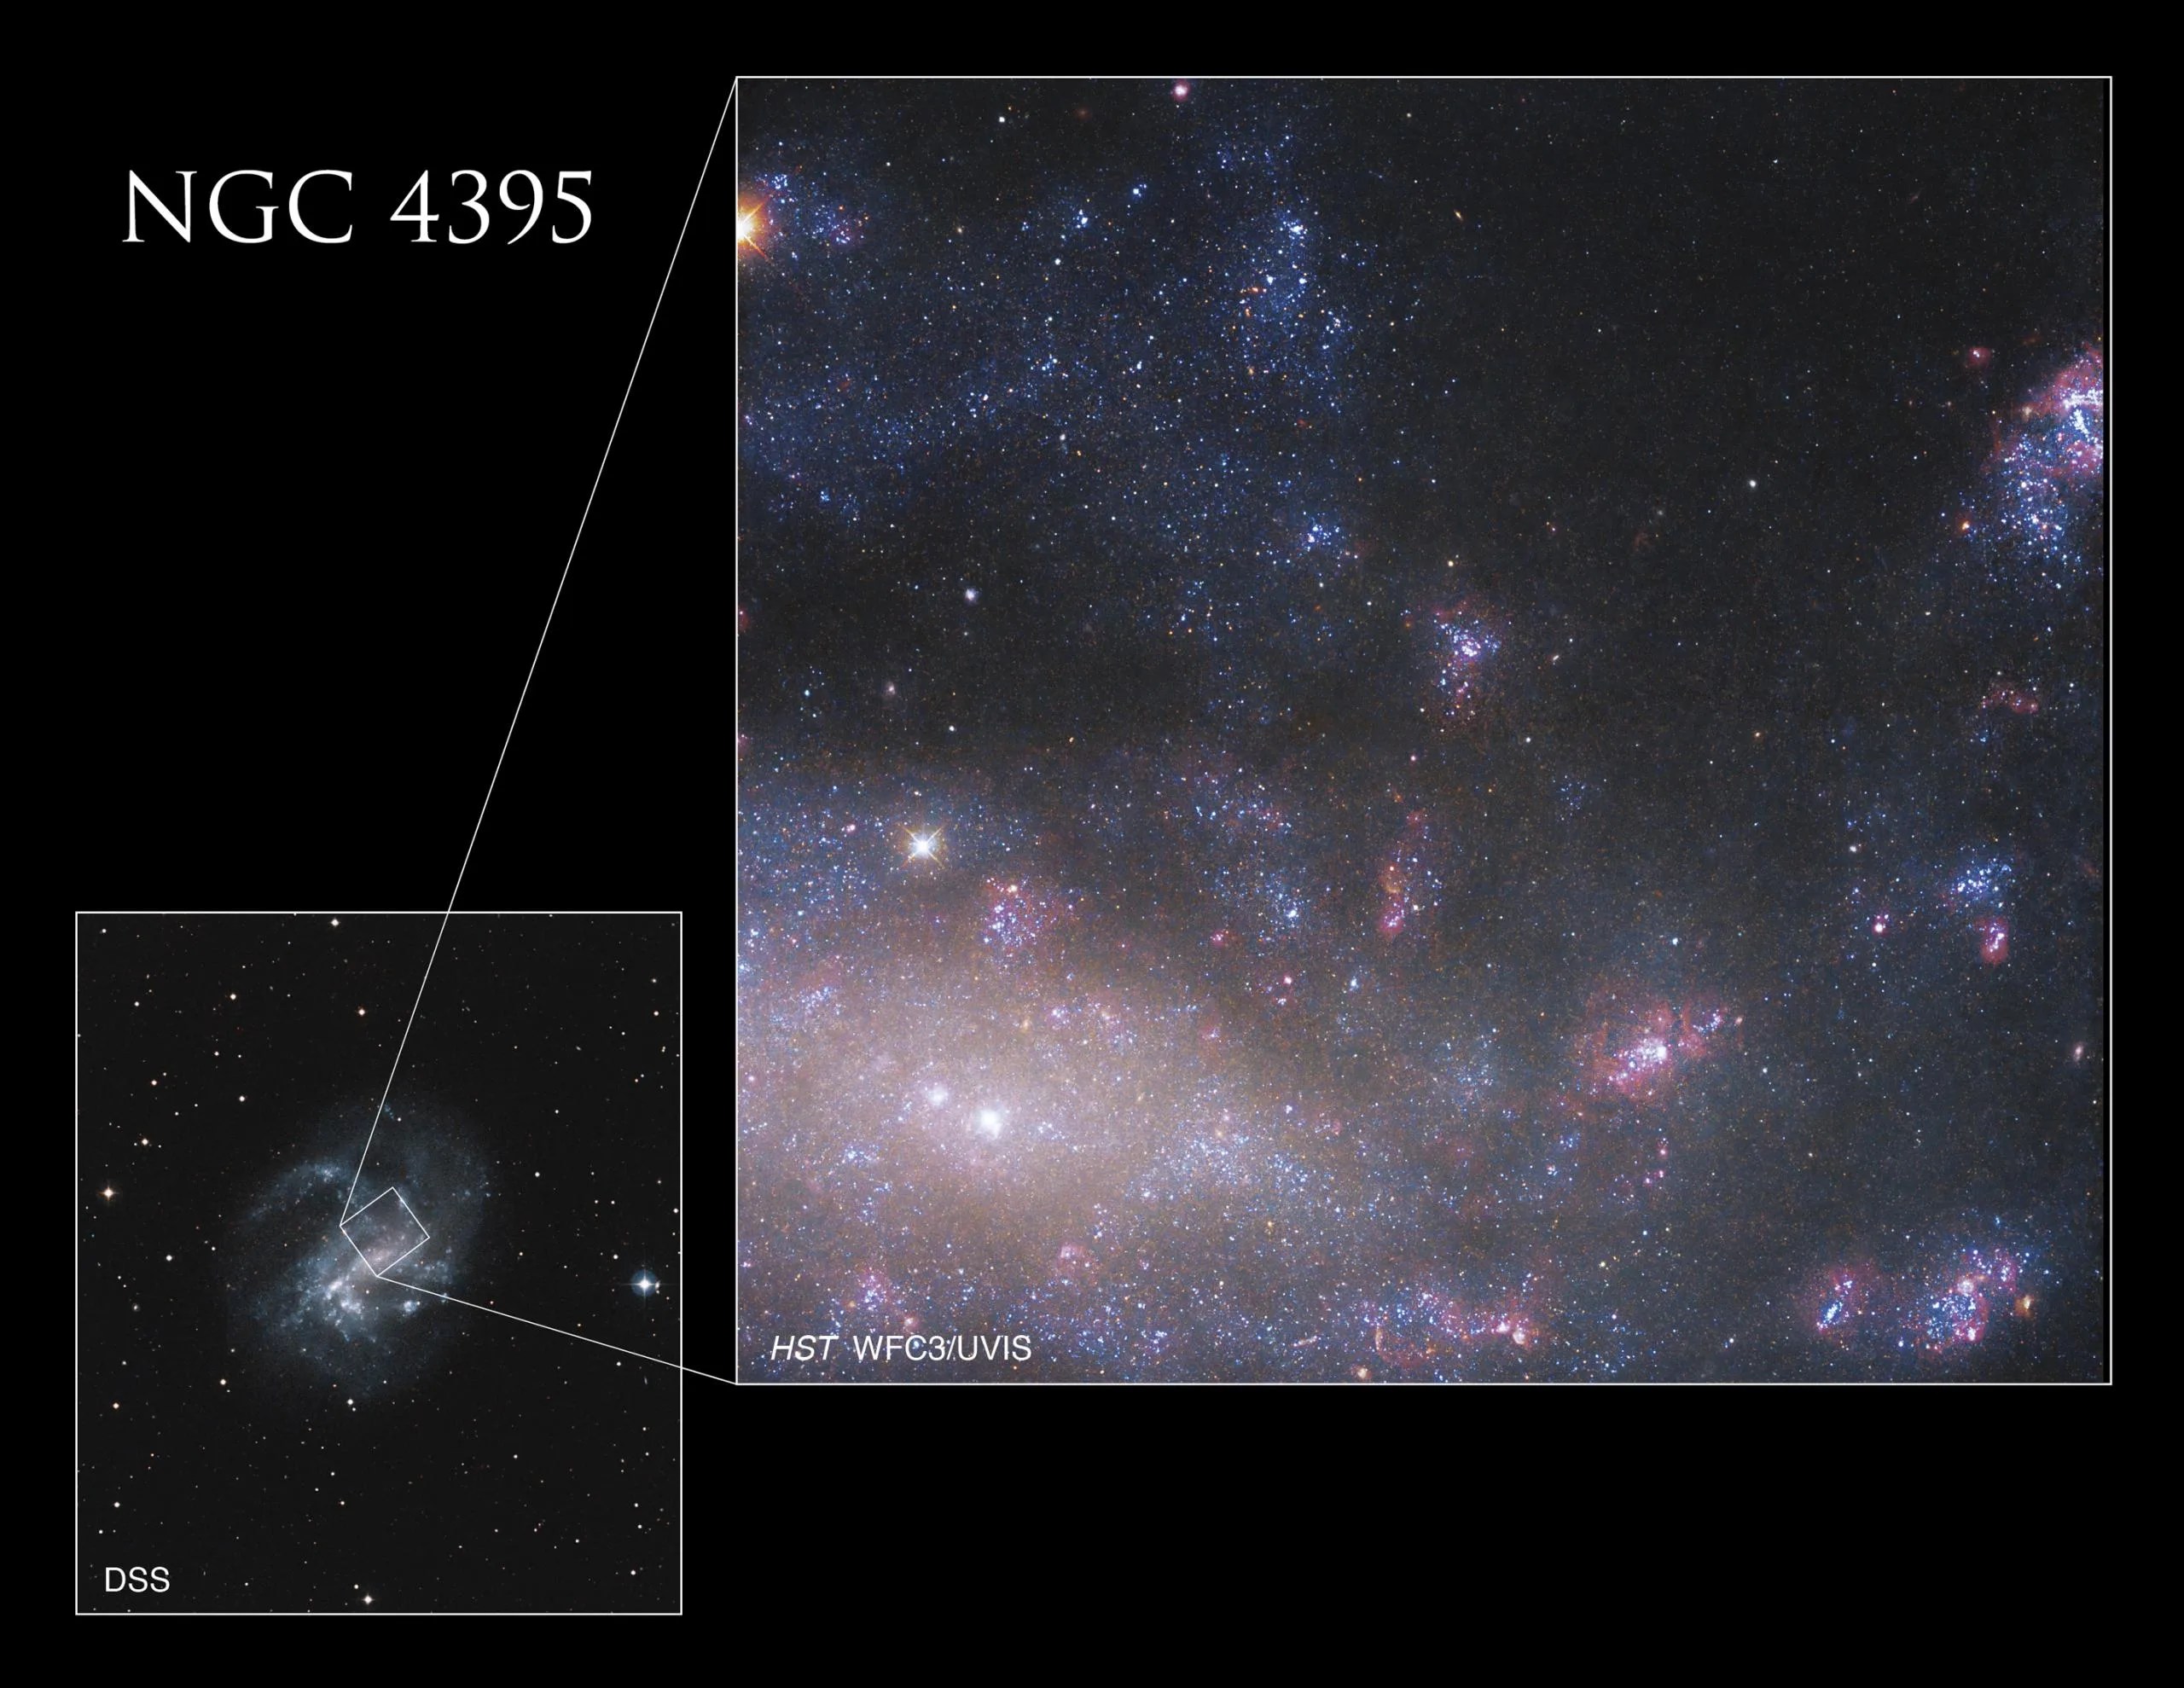 La imagen más grande de Hubble muestra la región central de NGC 4395 junto con una imagen más pequeña en el recuadro, en la esquina inferior izquierda, tomada por el Sondeo Digital del Cielo, que revela la ubicación de la imagen de Hubble en el contexto más amplio de la galaxia completa. Créditos: NASA, ESA, S. Larsen (Universidad Radboud de Nimega) y E. Sabbi (STScI); Procesamiento: Gladys Kober (NASA/Universidad Católica de América)